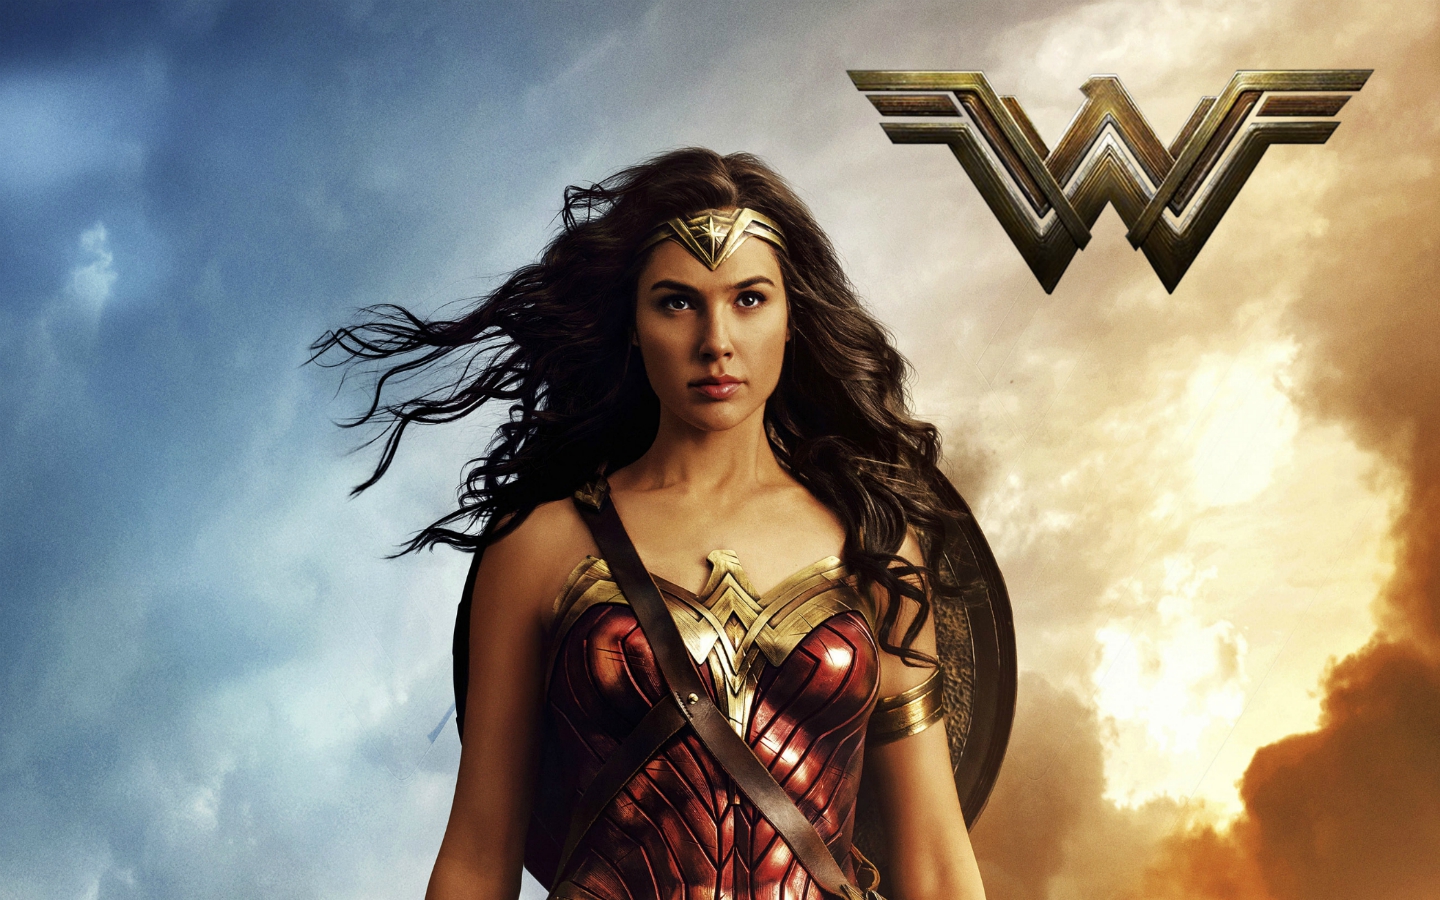 ‘Wonder Woman’ Passes ‘Deadpool’ In Worldwide Box Office Earnings